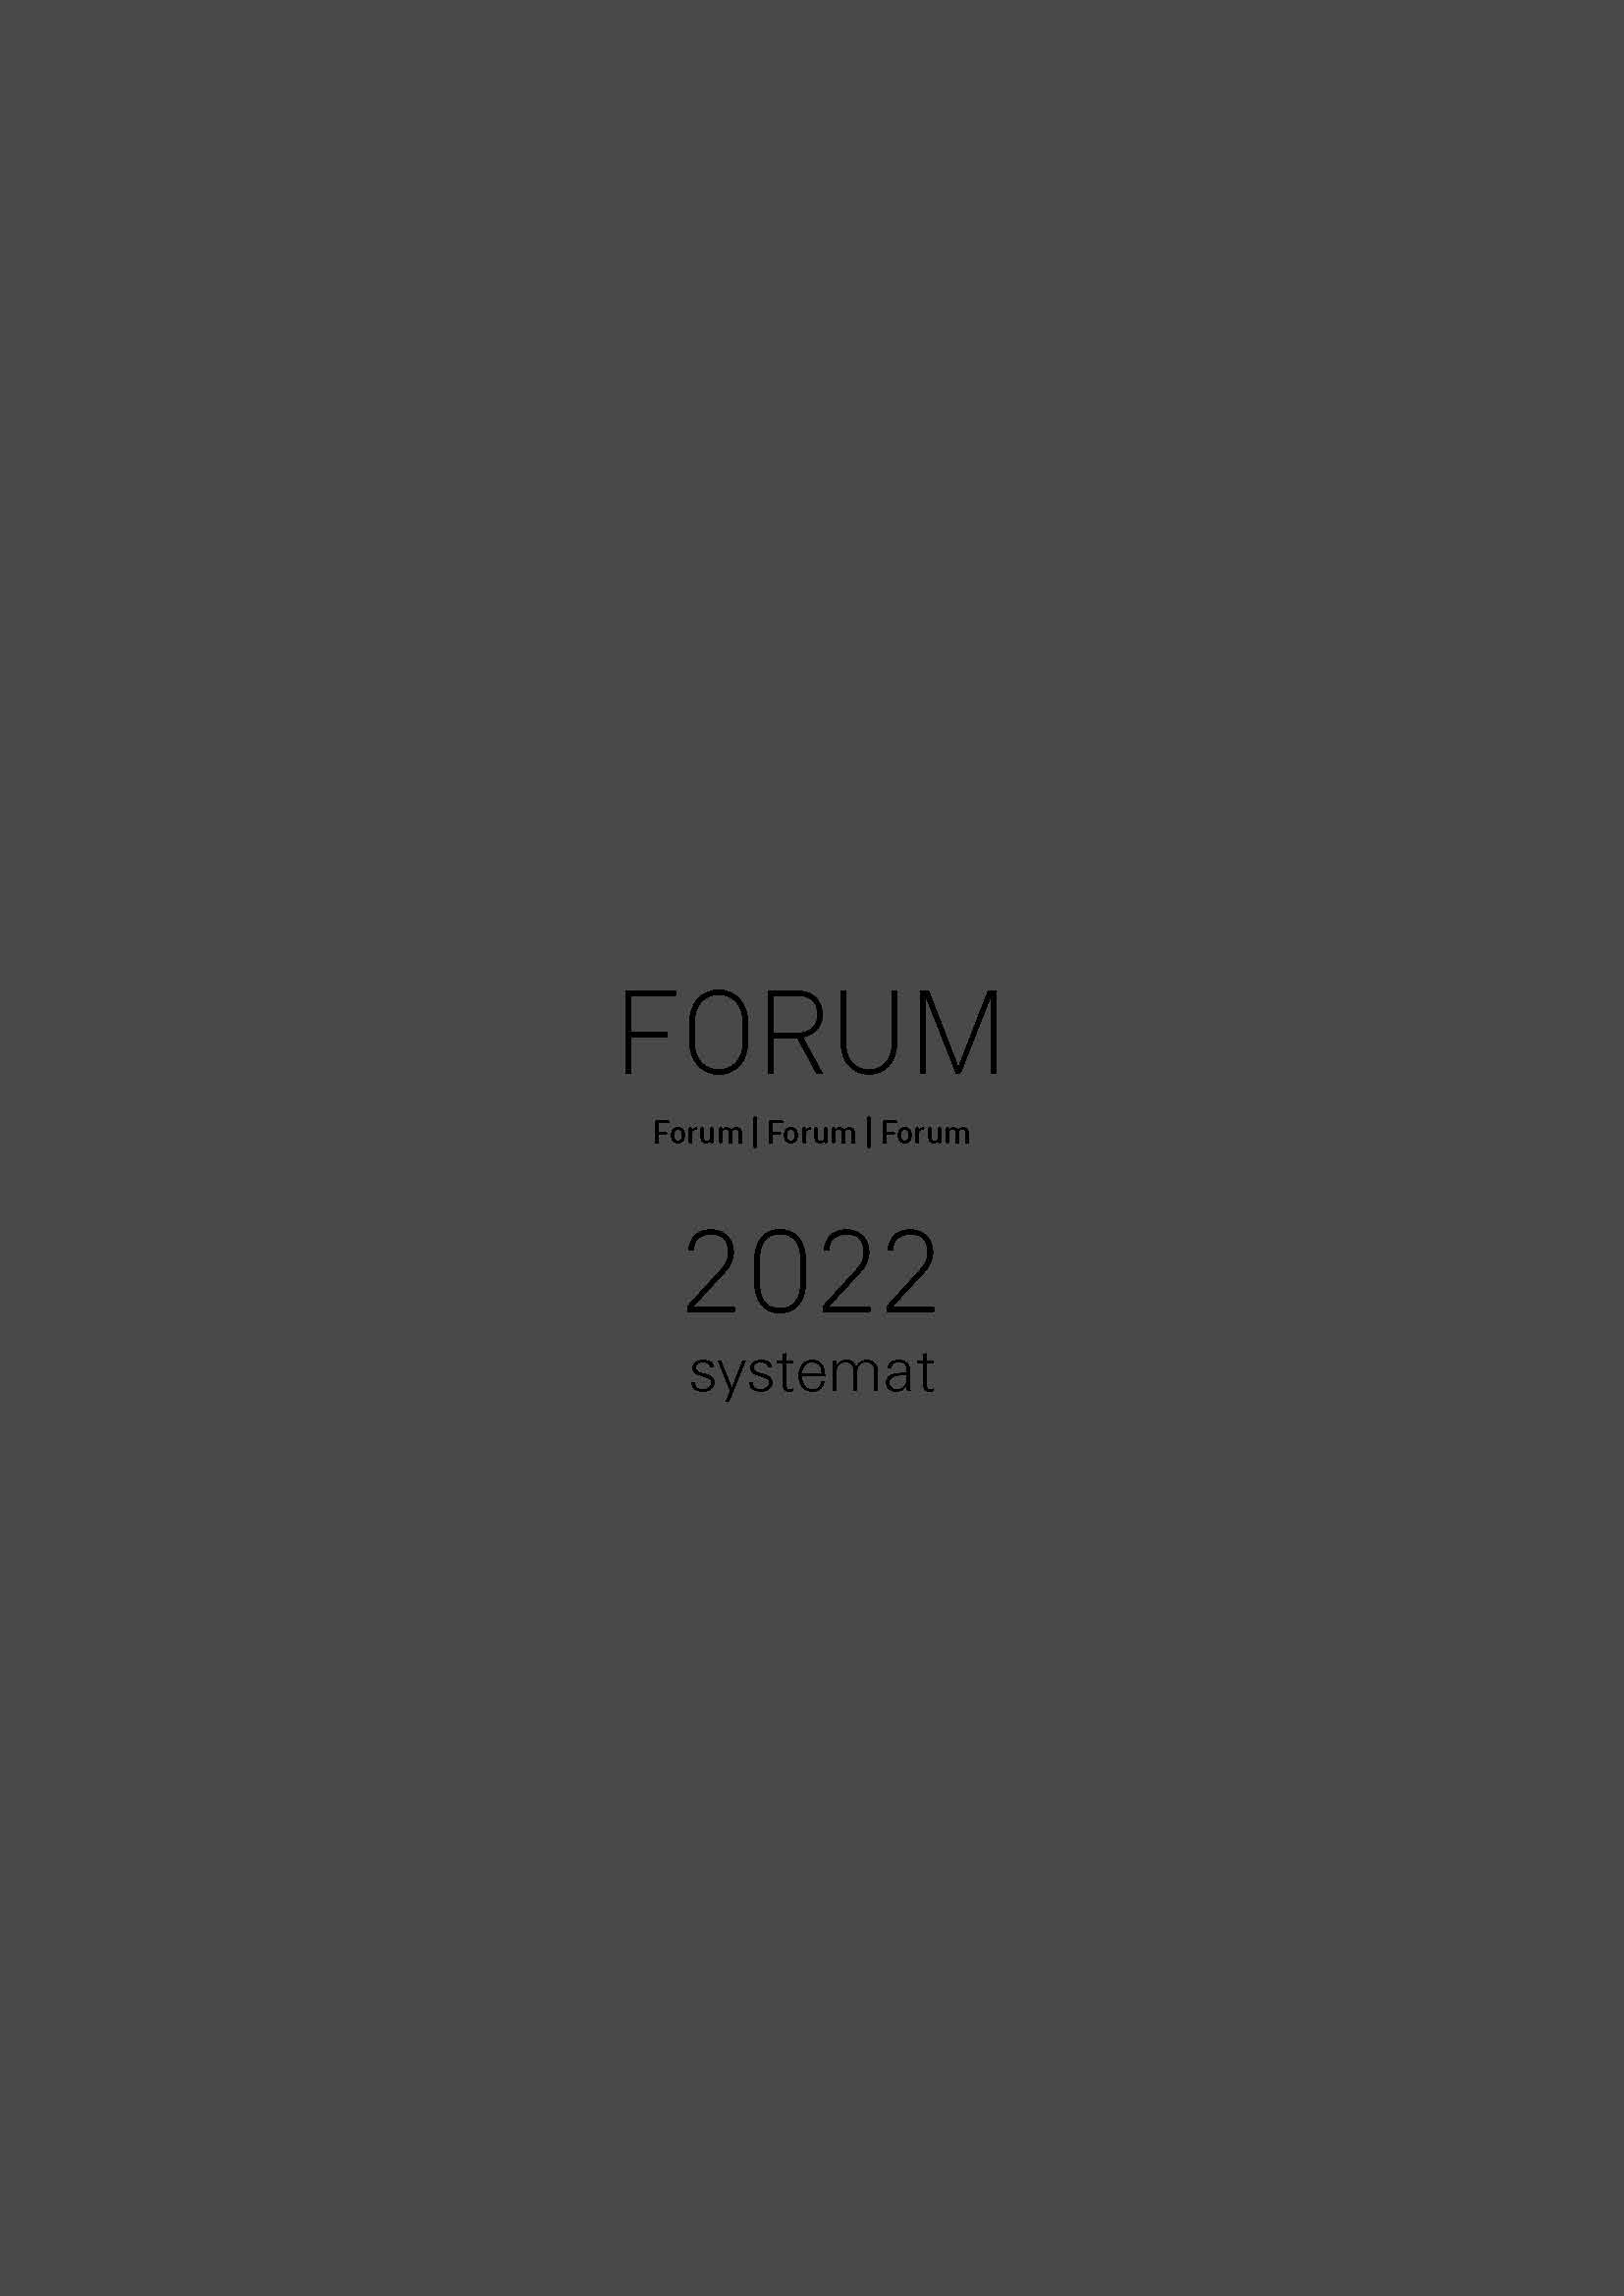 Forum 2022 Systemat